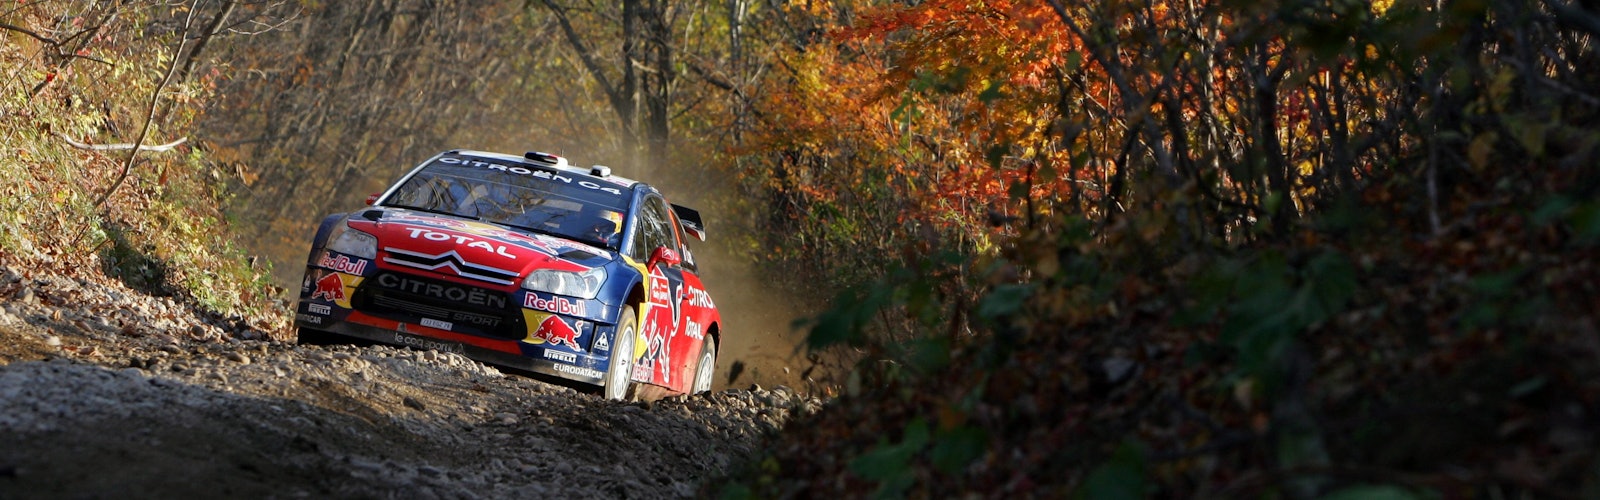 Sï¿½bastien Loeb, Red Bull Rally,   Citroï¿½n WRC Team